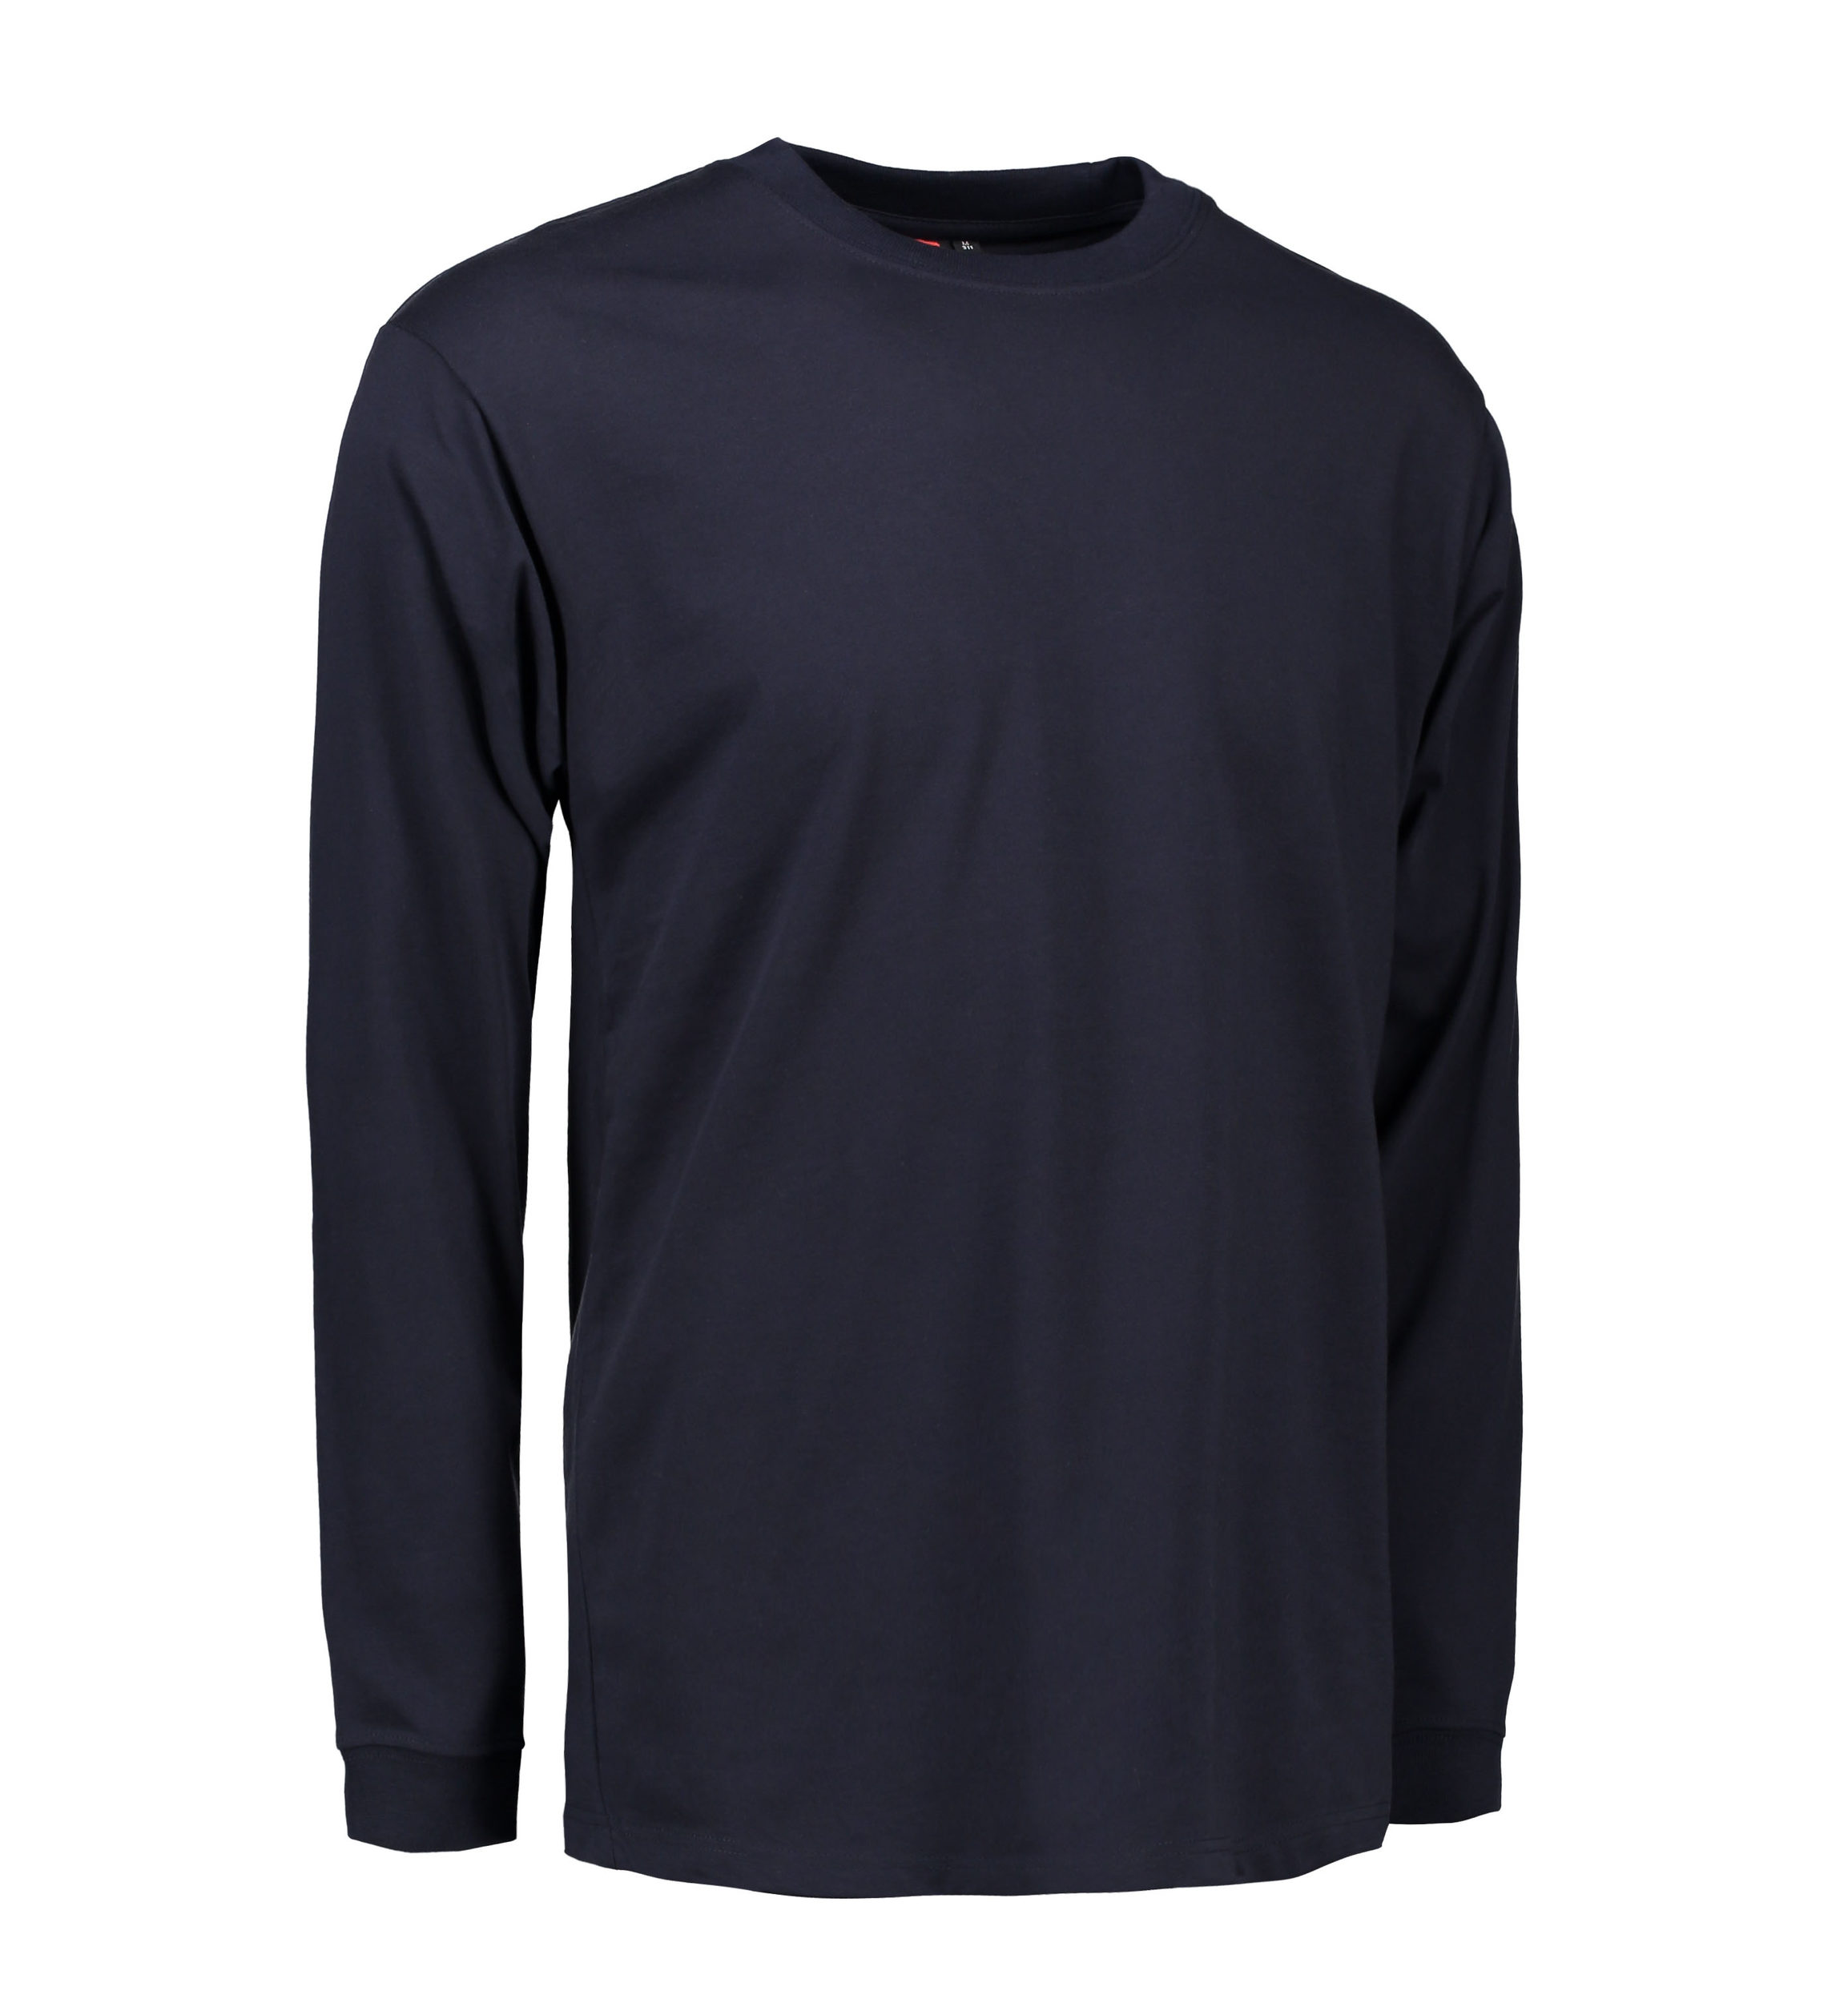 Billede af Slidstærk langærmet t-shirt til mænd i navy - XL hos Sygeplejebutikken.dk